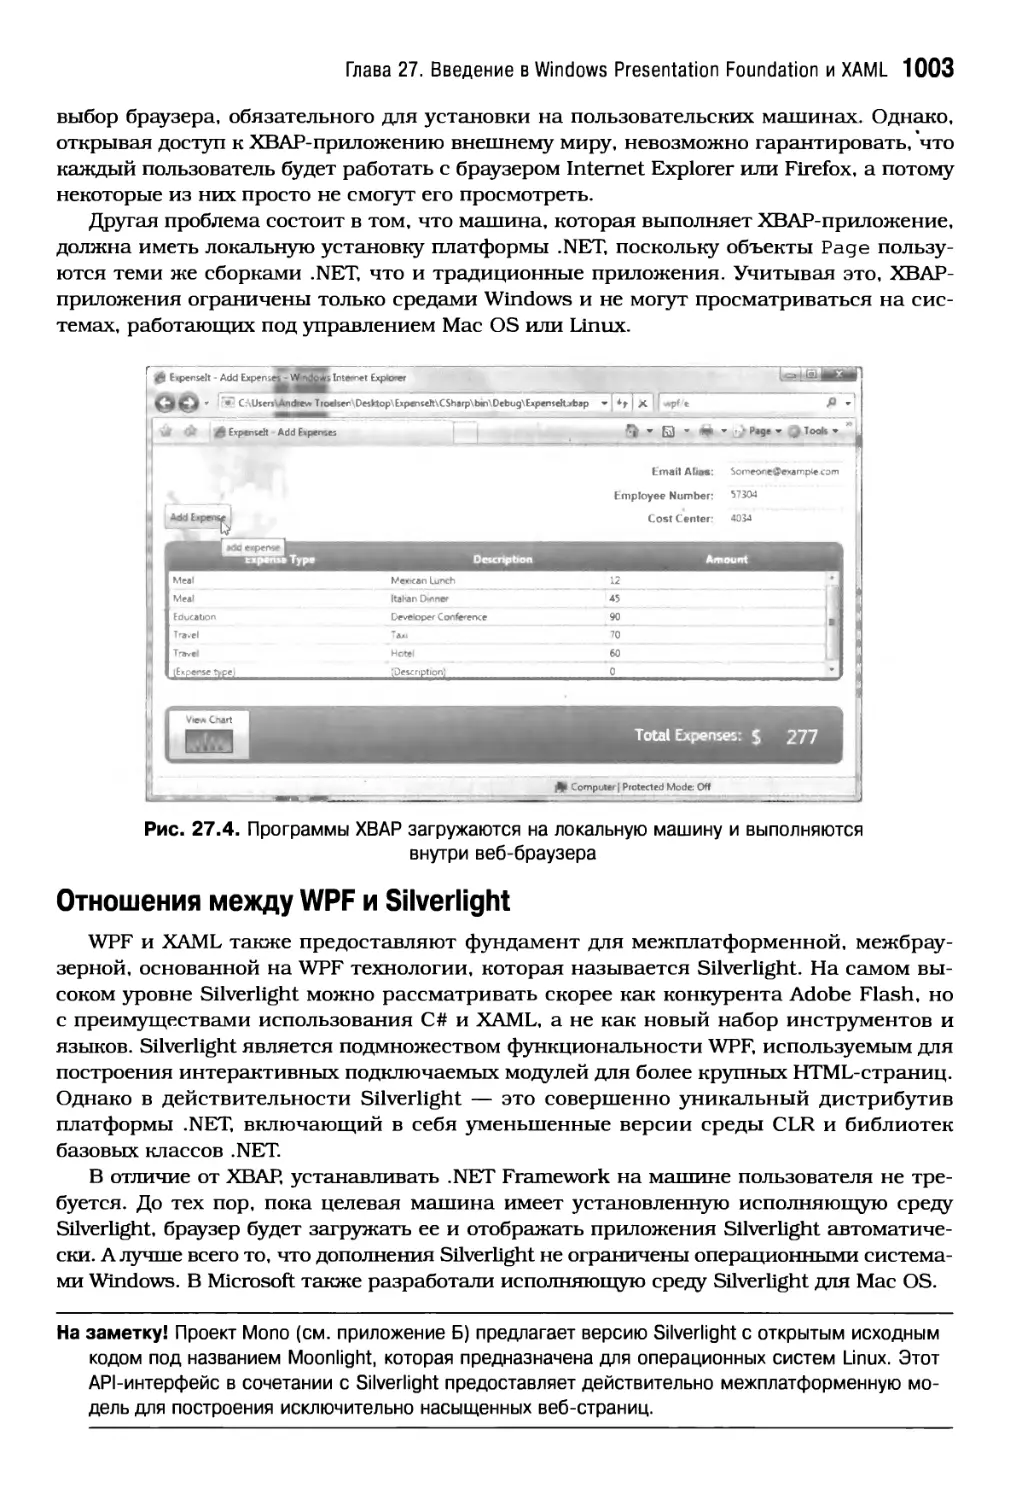 Отношения между WPF и Silverlight